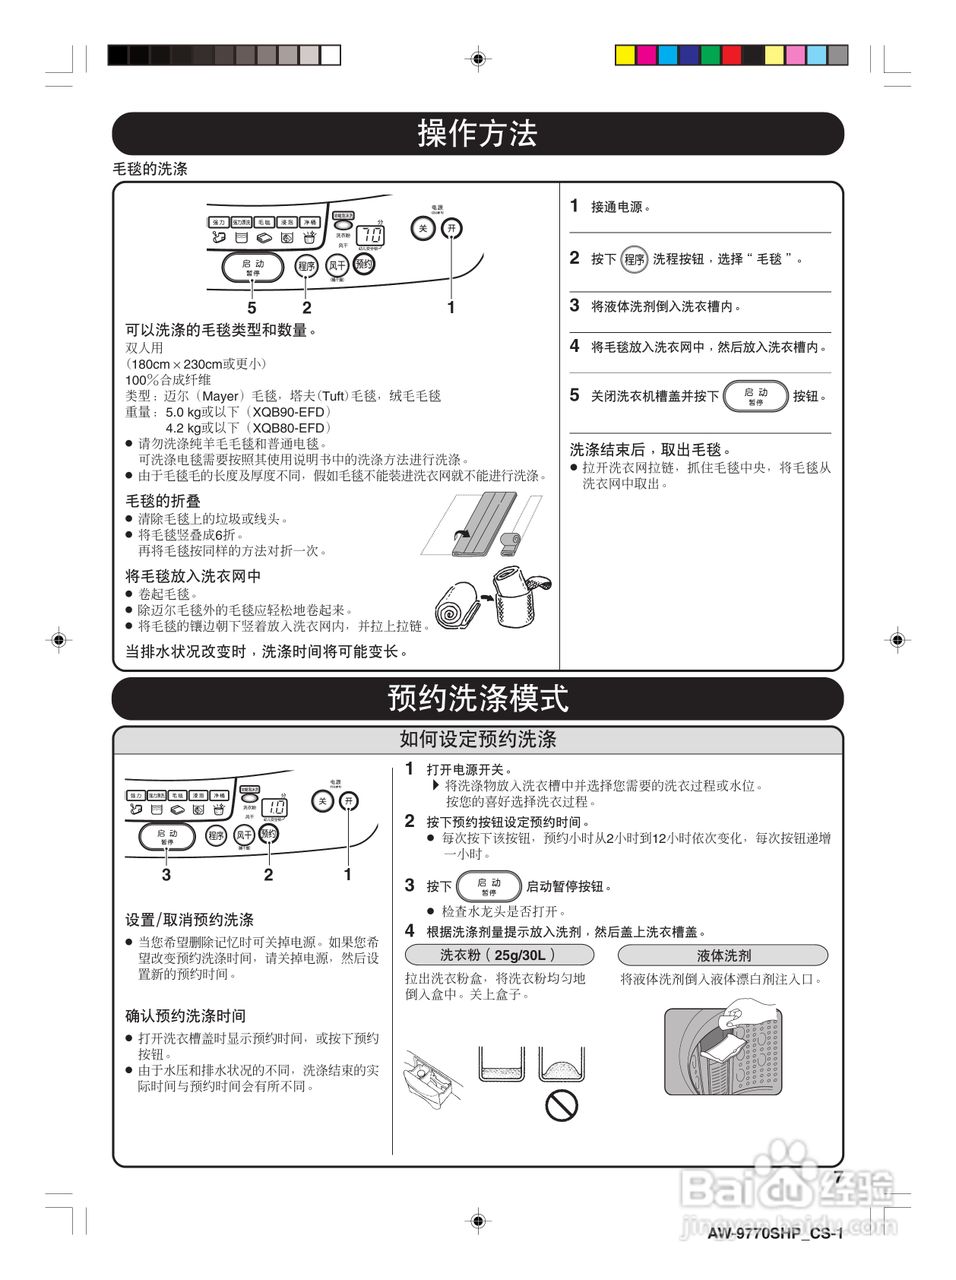 东芝xqb90-efd全自动洗衣机使用说明书